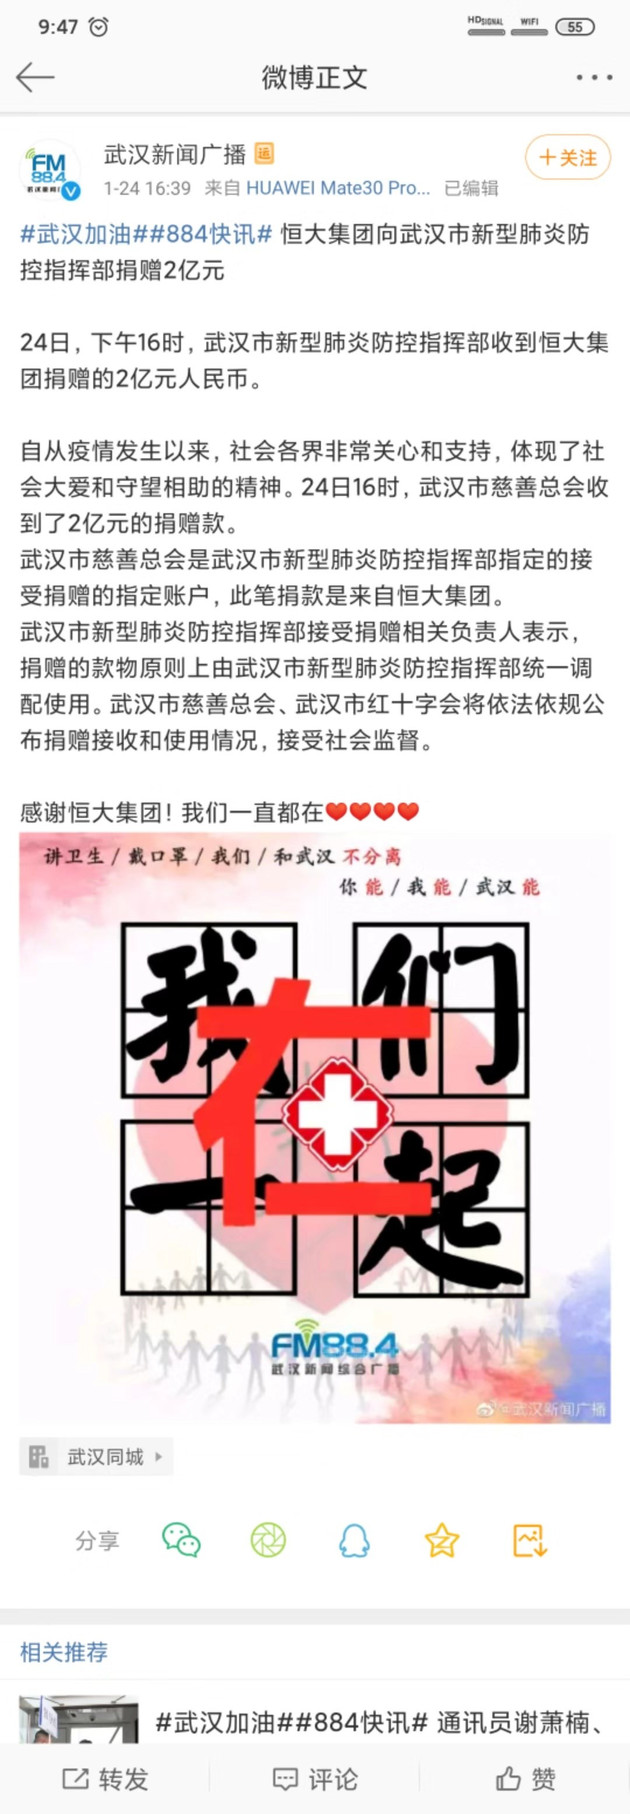 恒大集团向武汉市新冠肺炎防控指挥部捐赠2亿元